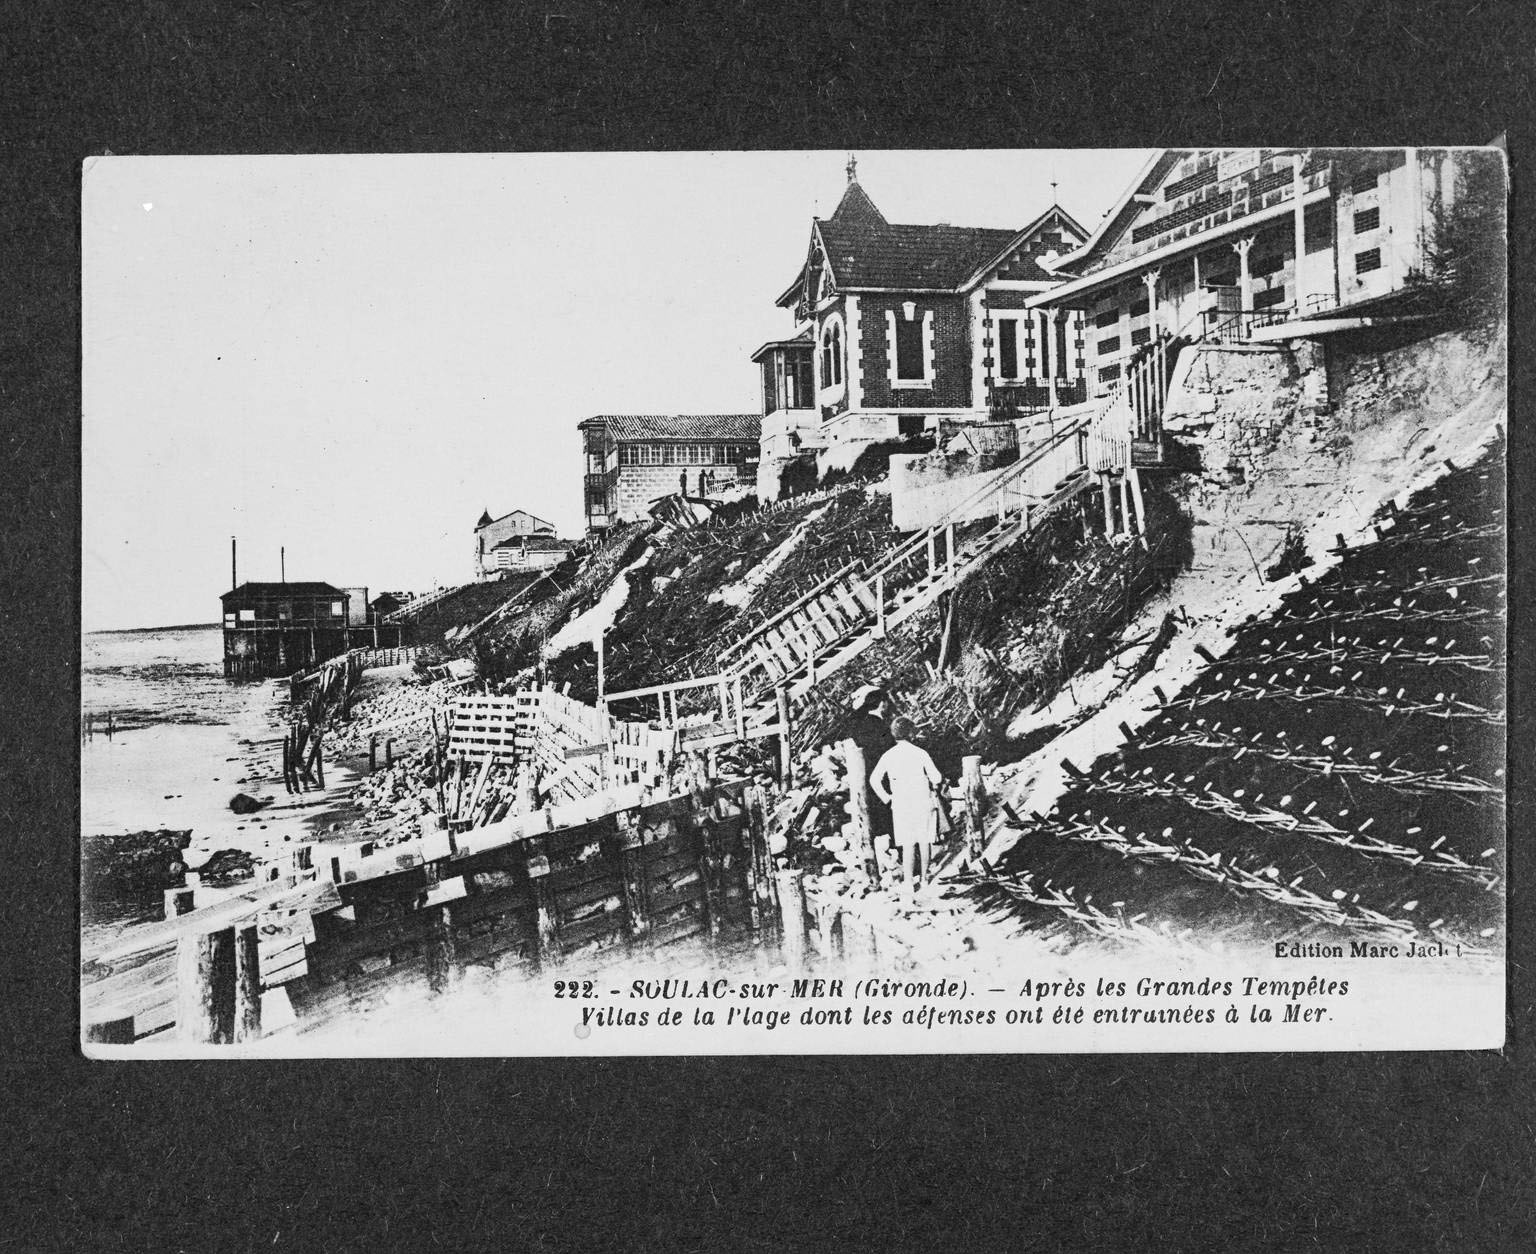 Carte postale, début 20e siècle (collection particulière) : Après les grandes tempêtes, villas sur la plage dont les défenses ont été entraînées à la mer.